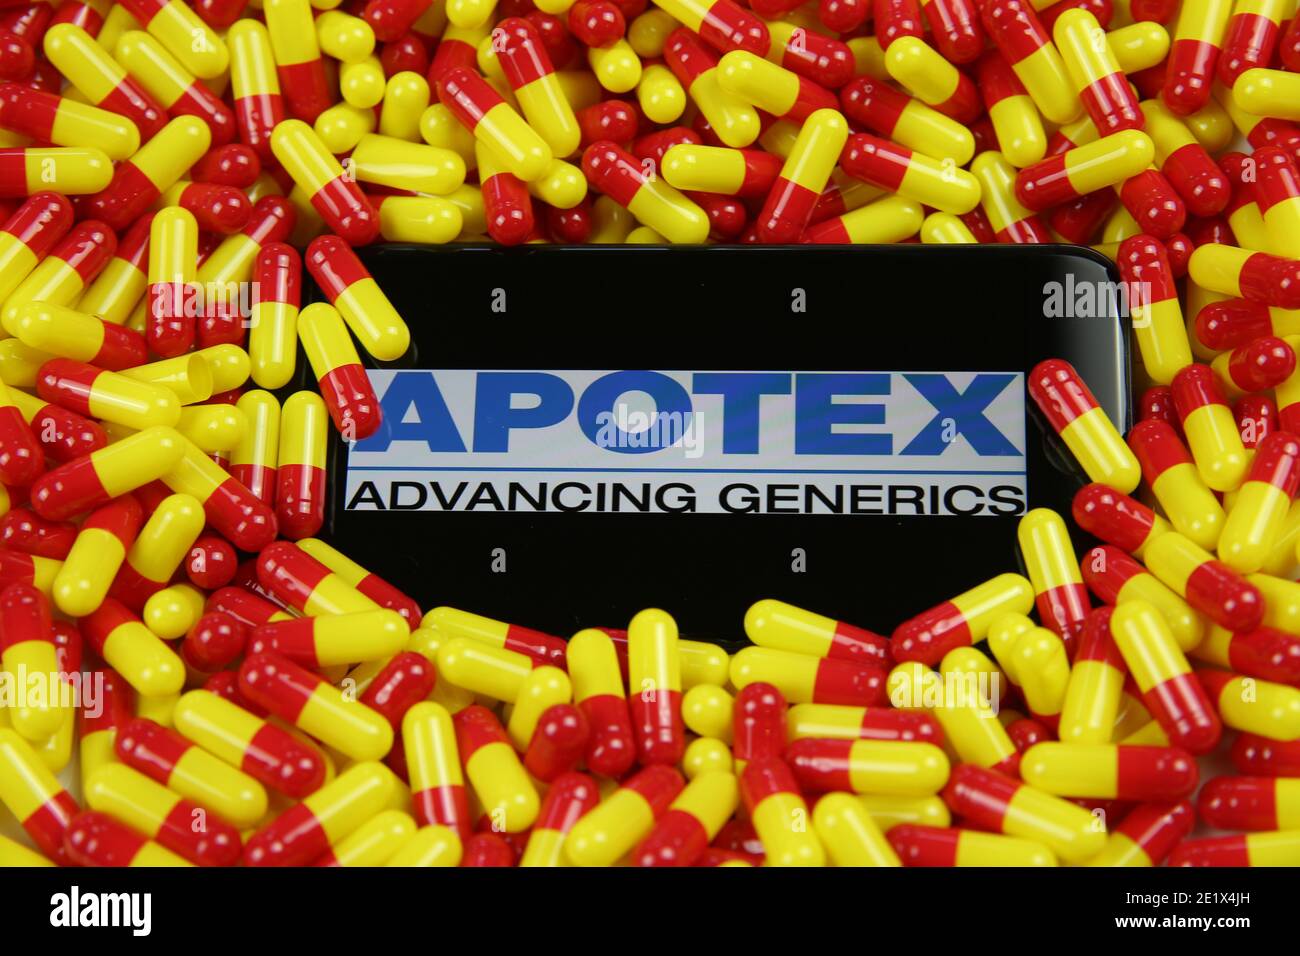 Viersen, Germania - 9 aprile. 2020: Primo piano dello schermo del telefono cellulare con la scritta del logo della società farmaceutica canadese Apotex sul palo giallo rosso dru Foto Stock